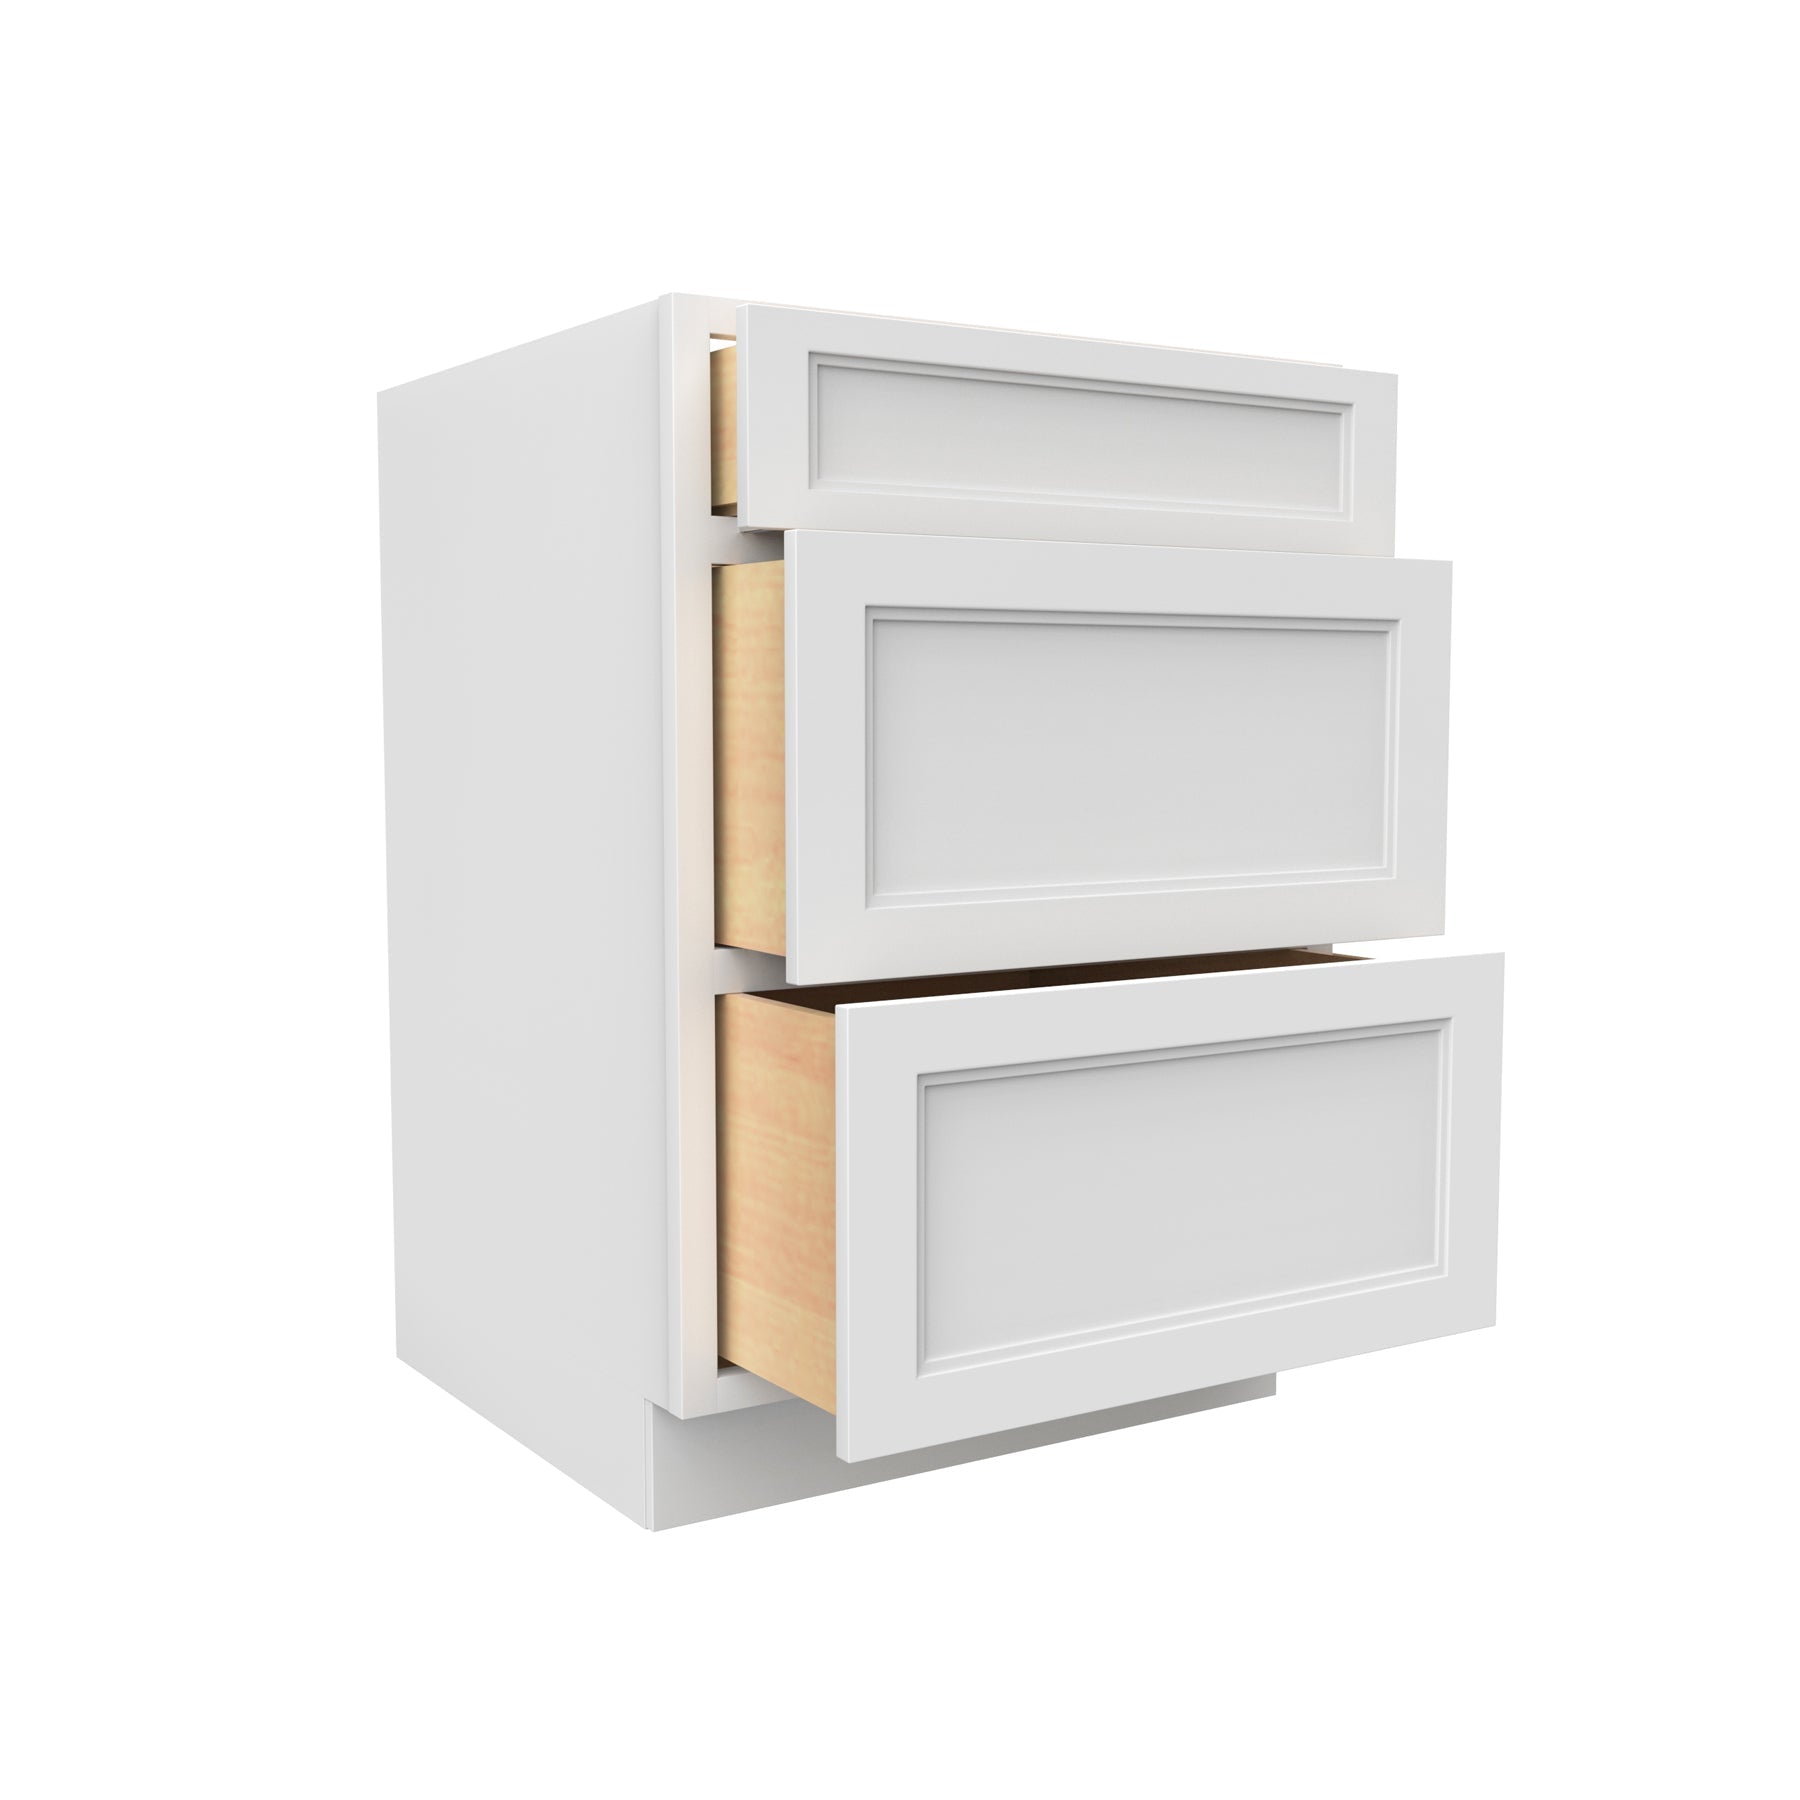 RTA - Fashion White - 3 Drawer Base Cabinet | 24"W x 34.5"H x 24"D